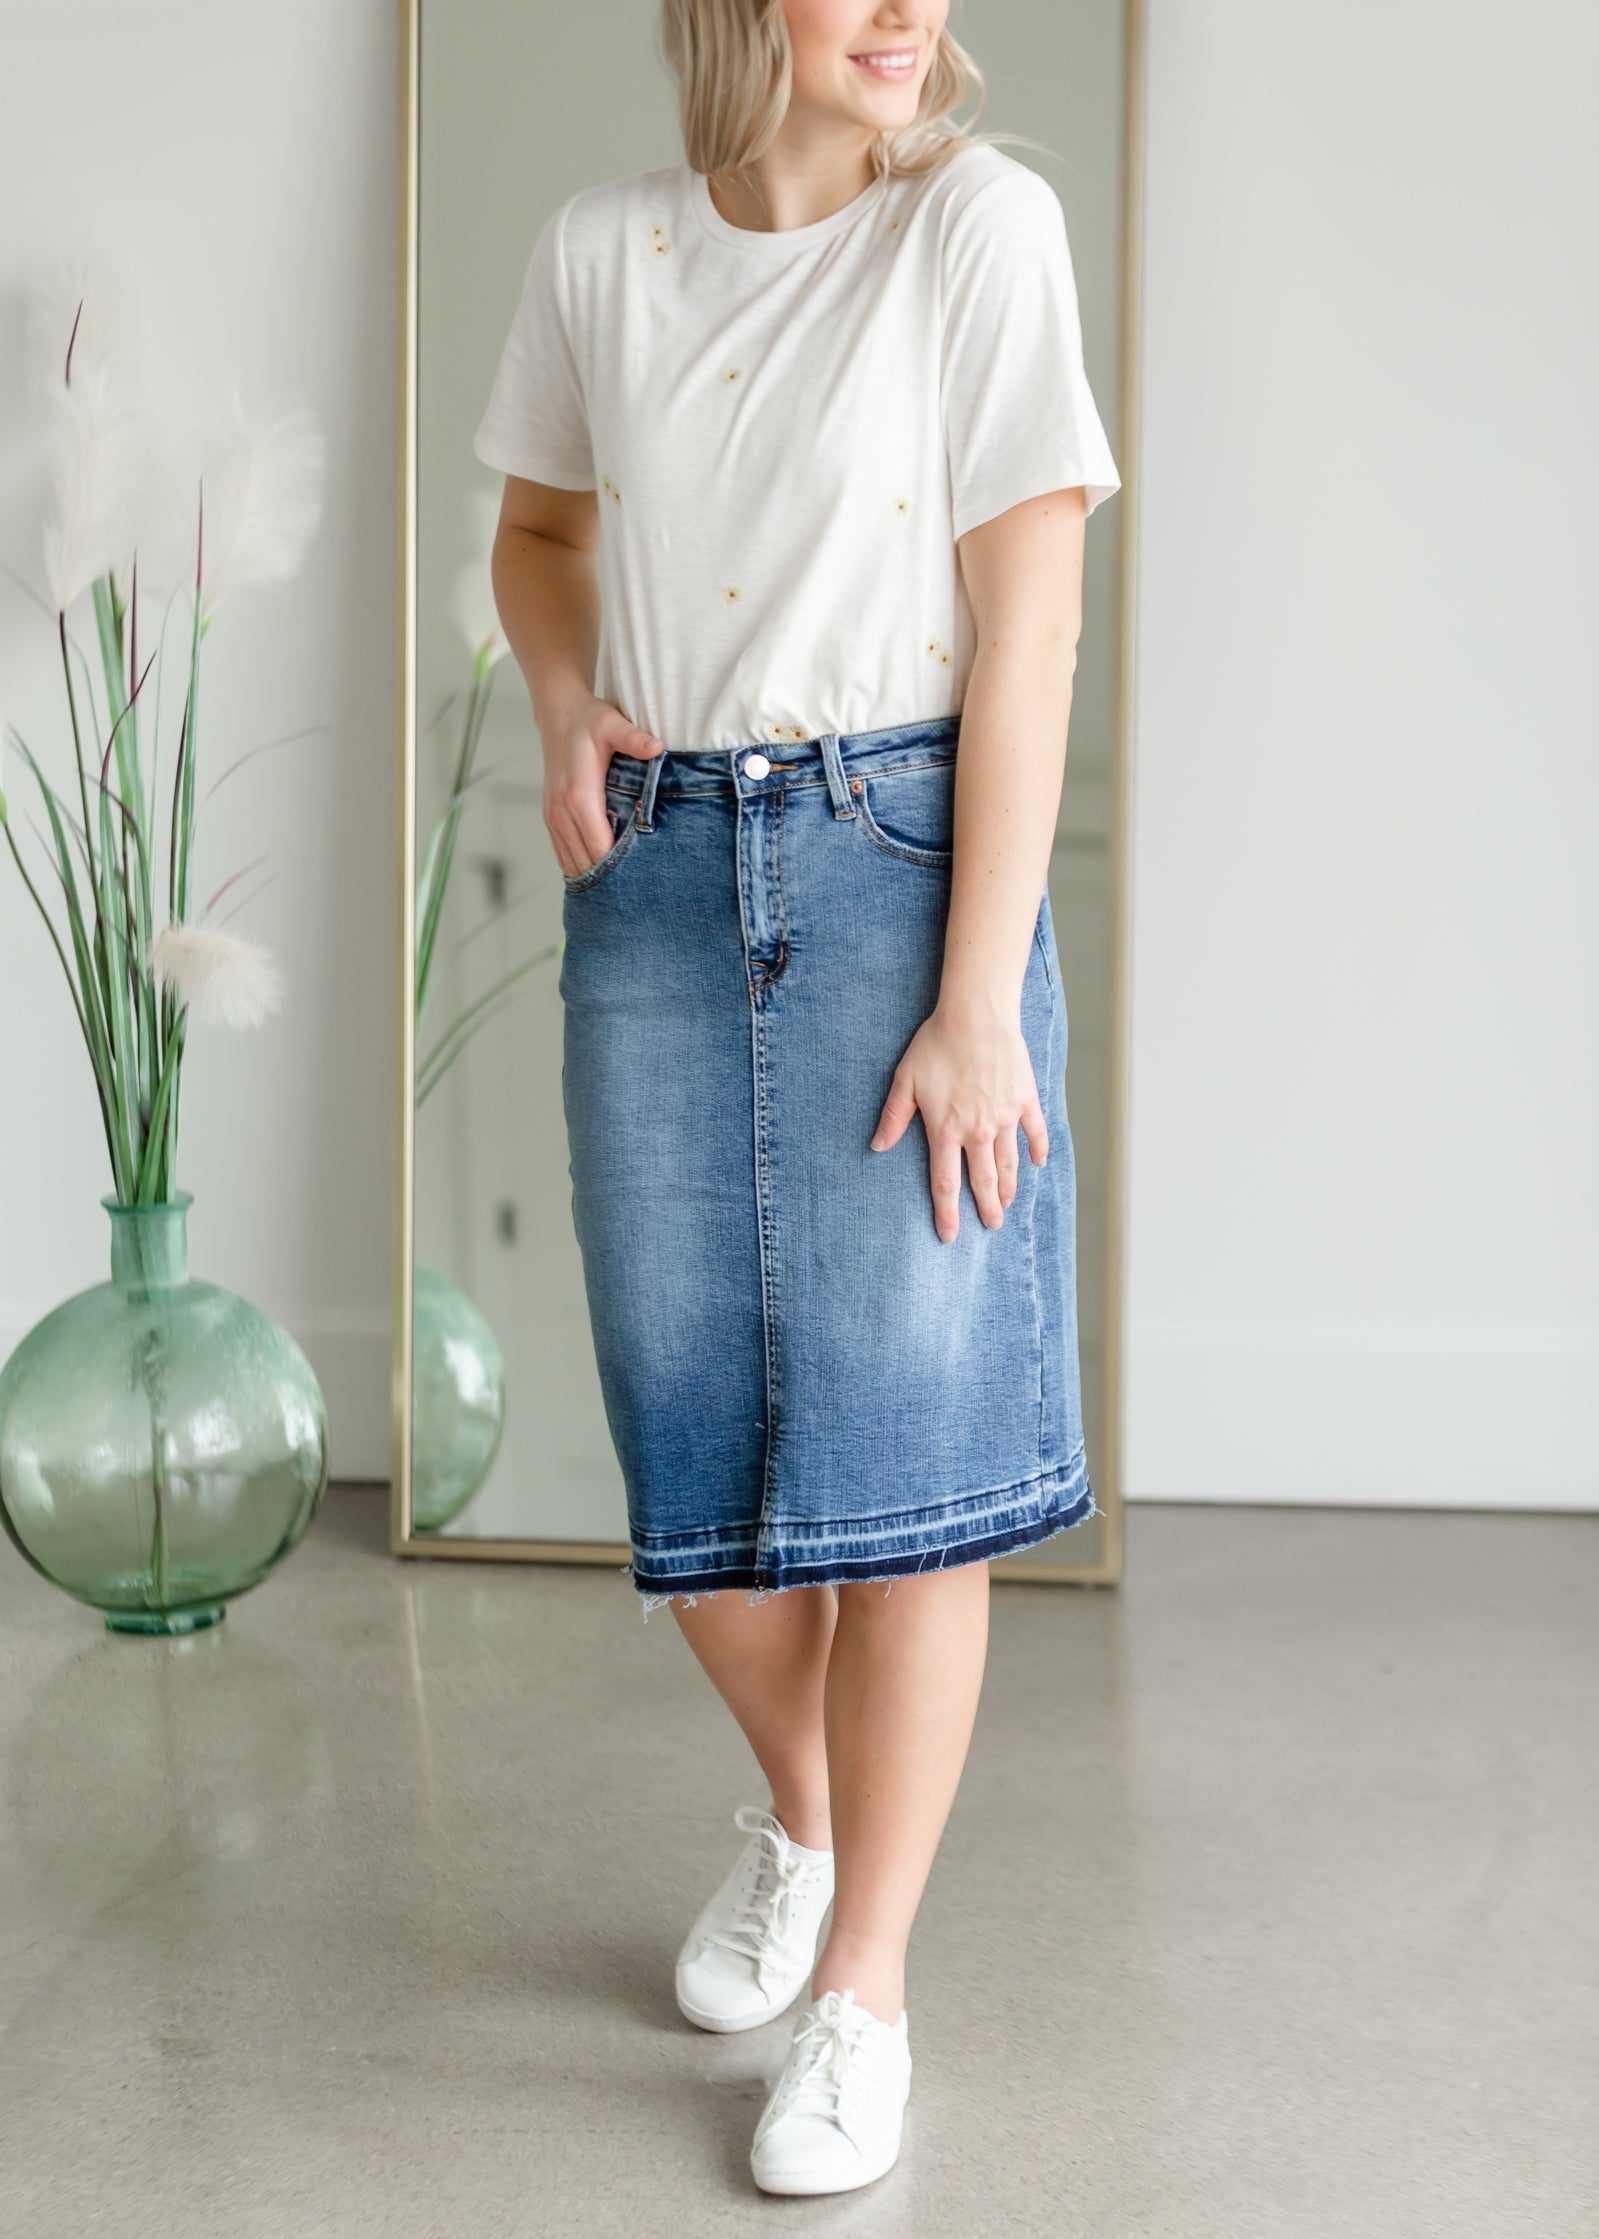 New Style Green Short Pencil Denim Jeans Skirt for Women Edge